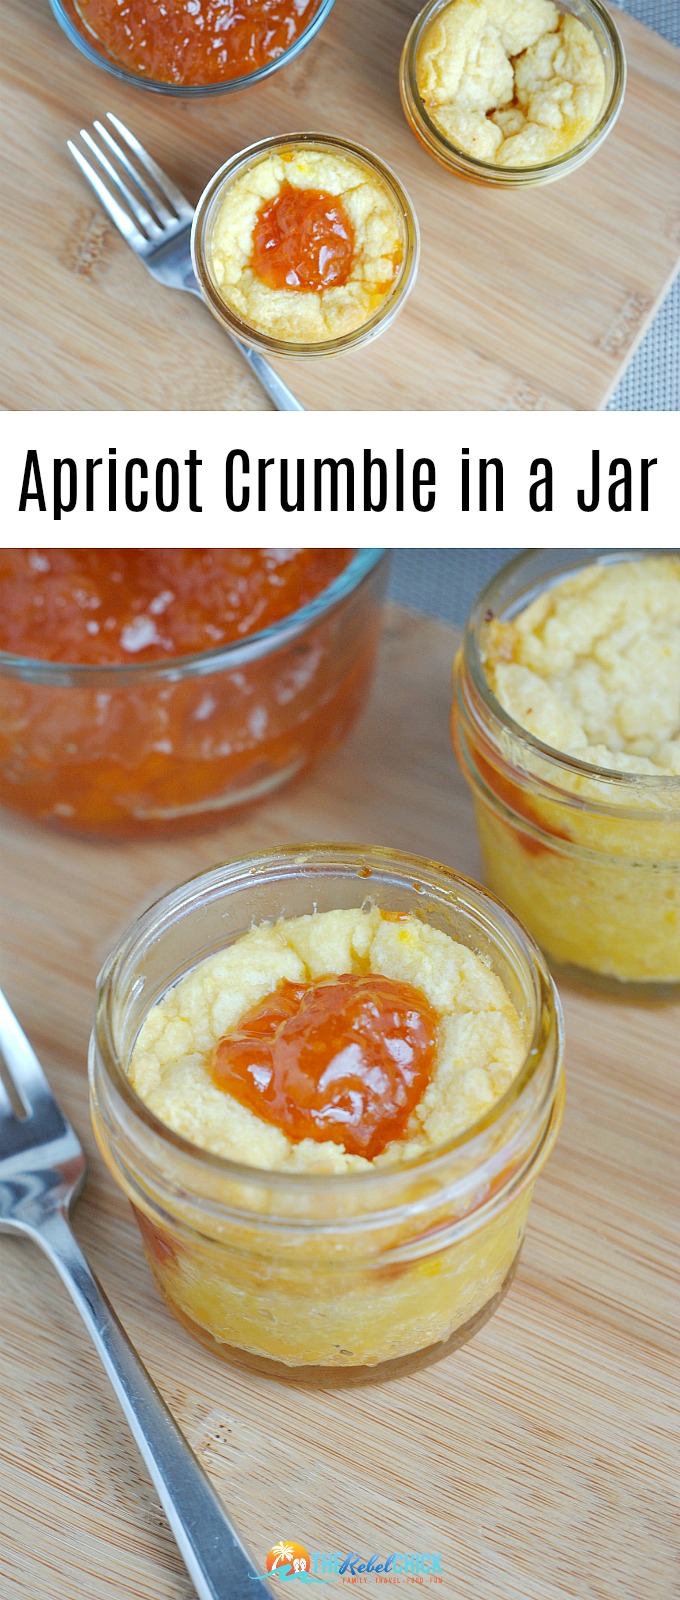 Apricot Crumble in a Jar Recipe